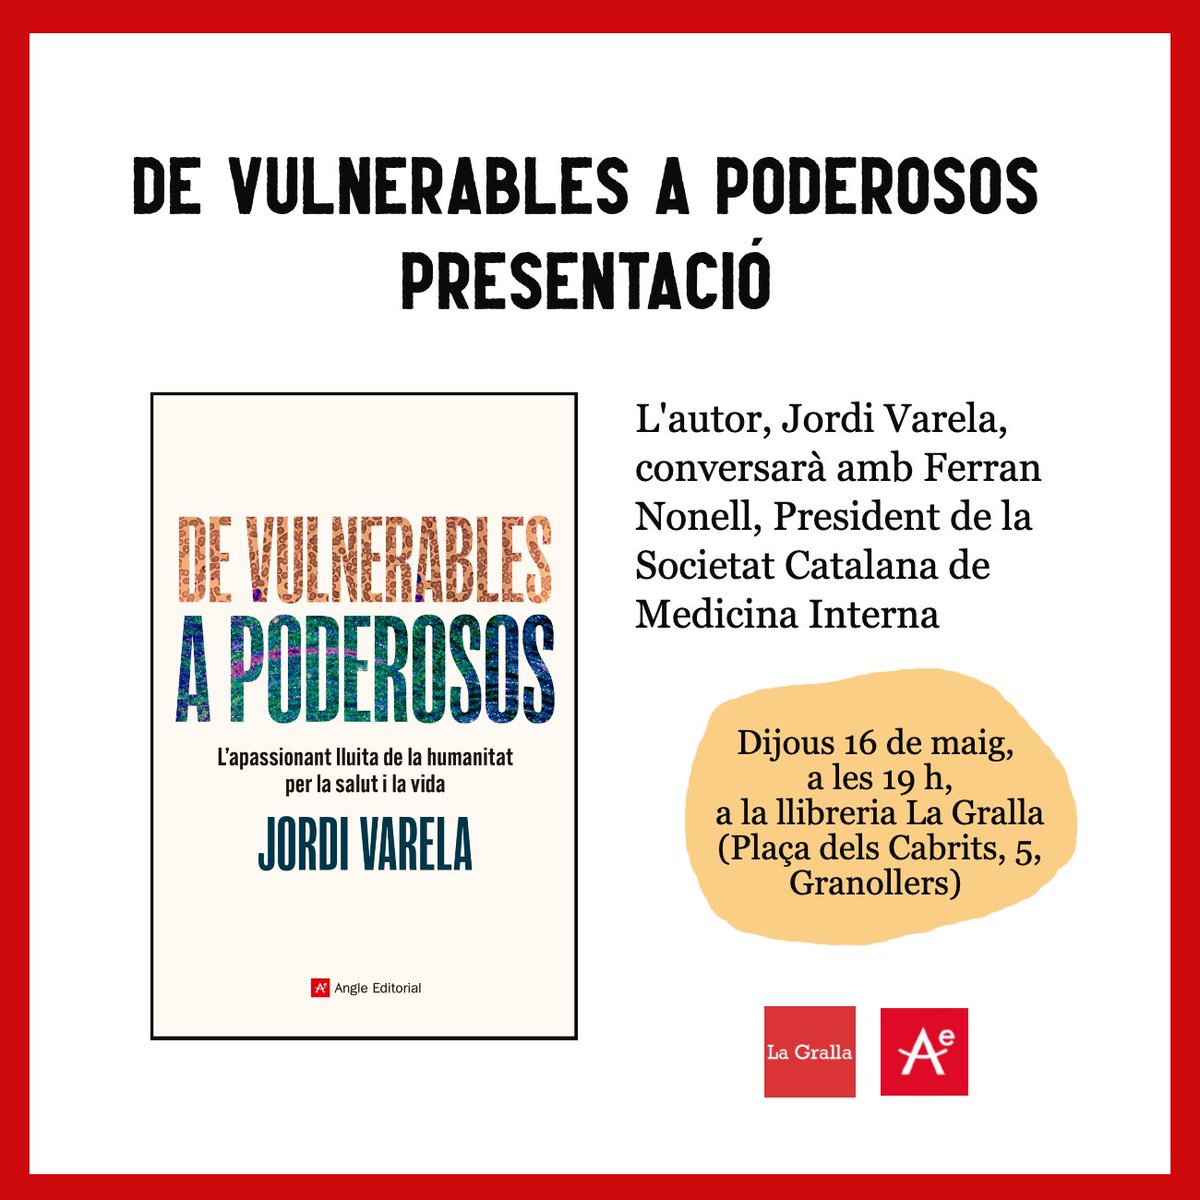 🔴Demà parlarem de salut i vida amb Jordi Varela i Ferran Nonell tot presentant el llibre 'De vulnerables i poderosos'. @angleeditorial 🥰T'apuntes?